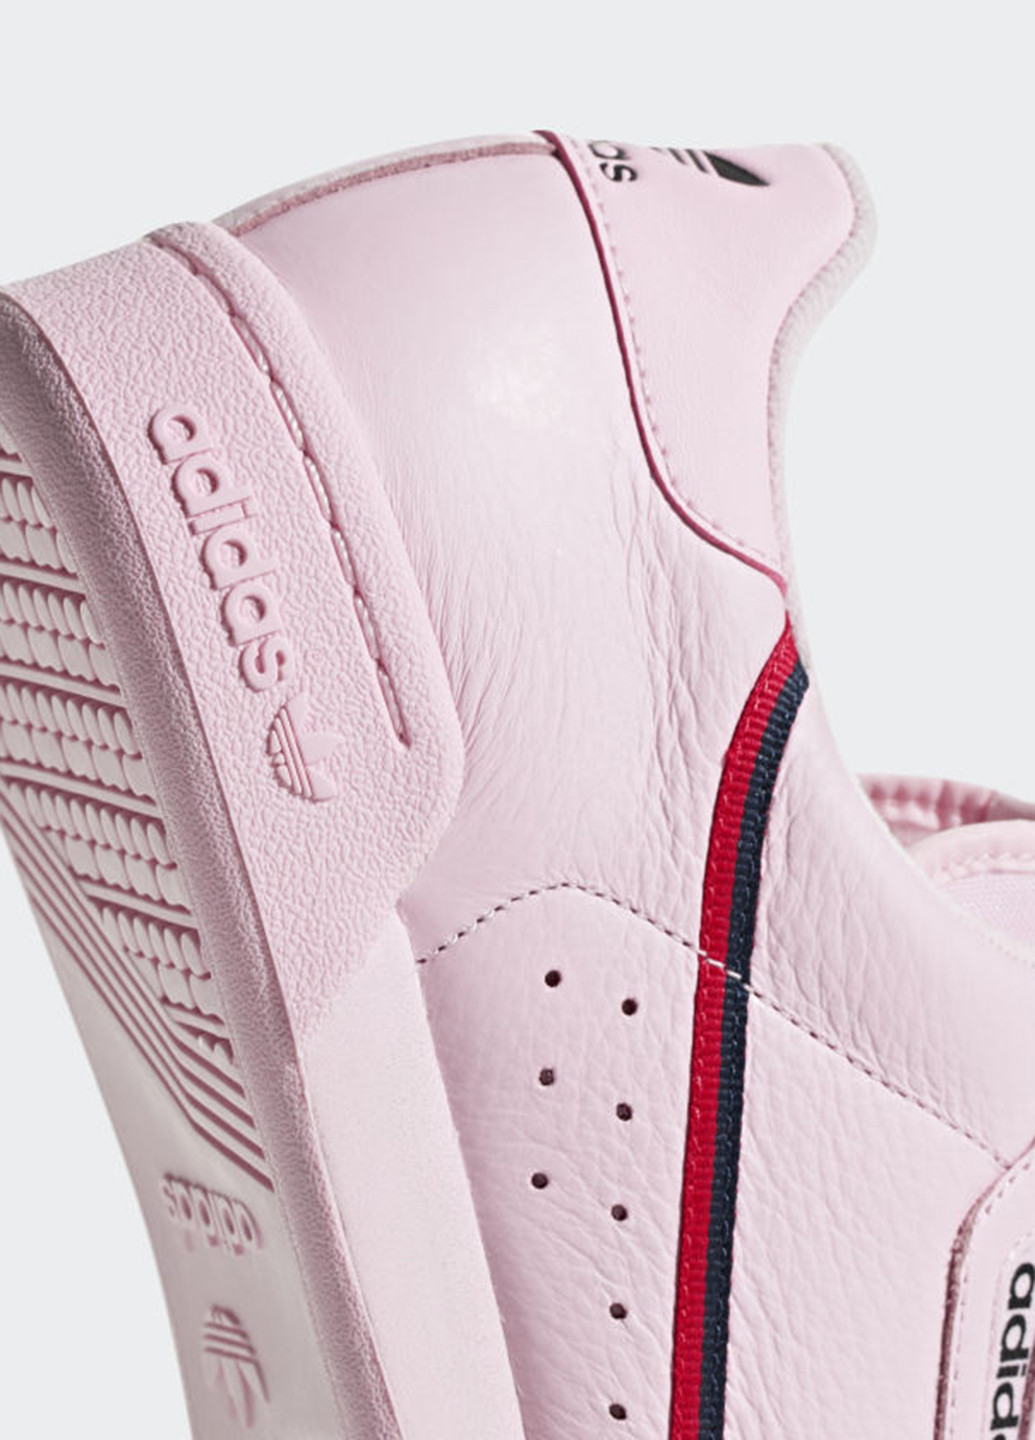 Розовые демисезонные кроссовки adidas Continental 80